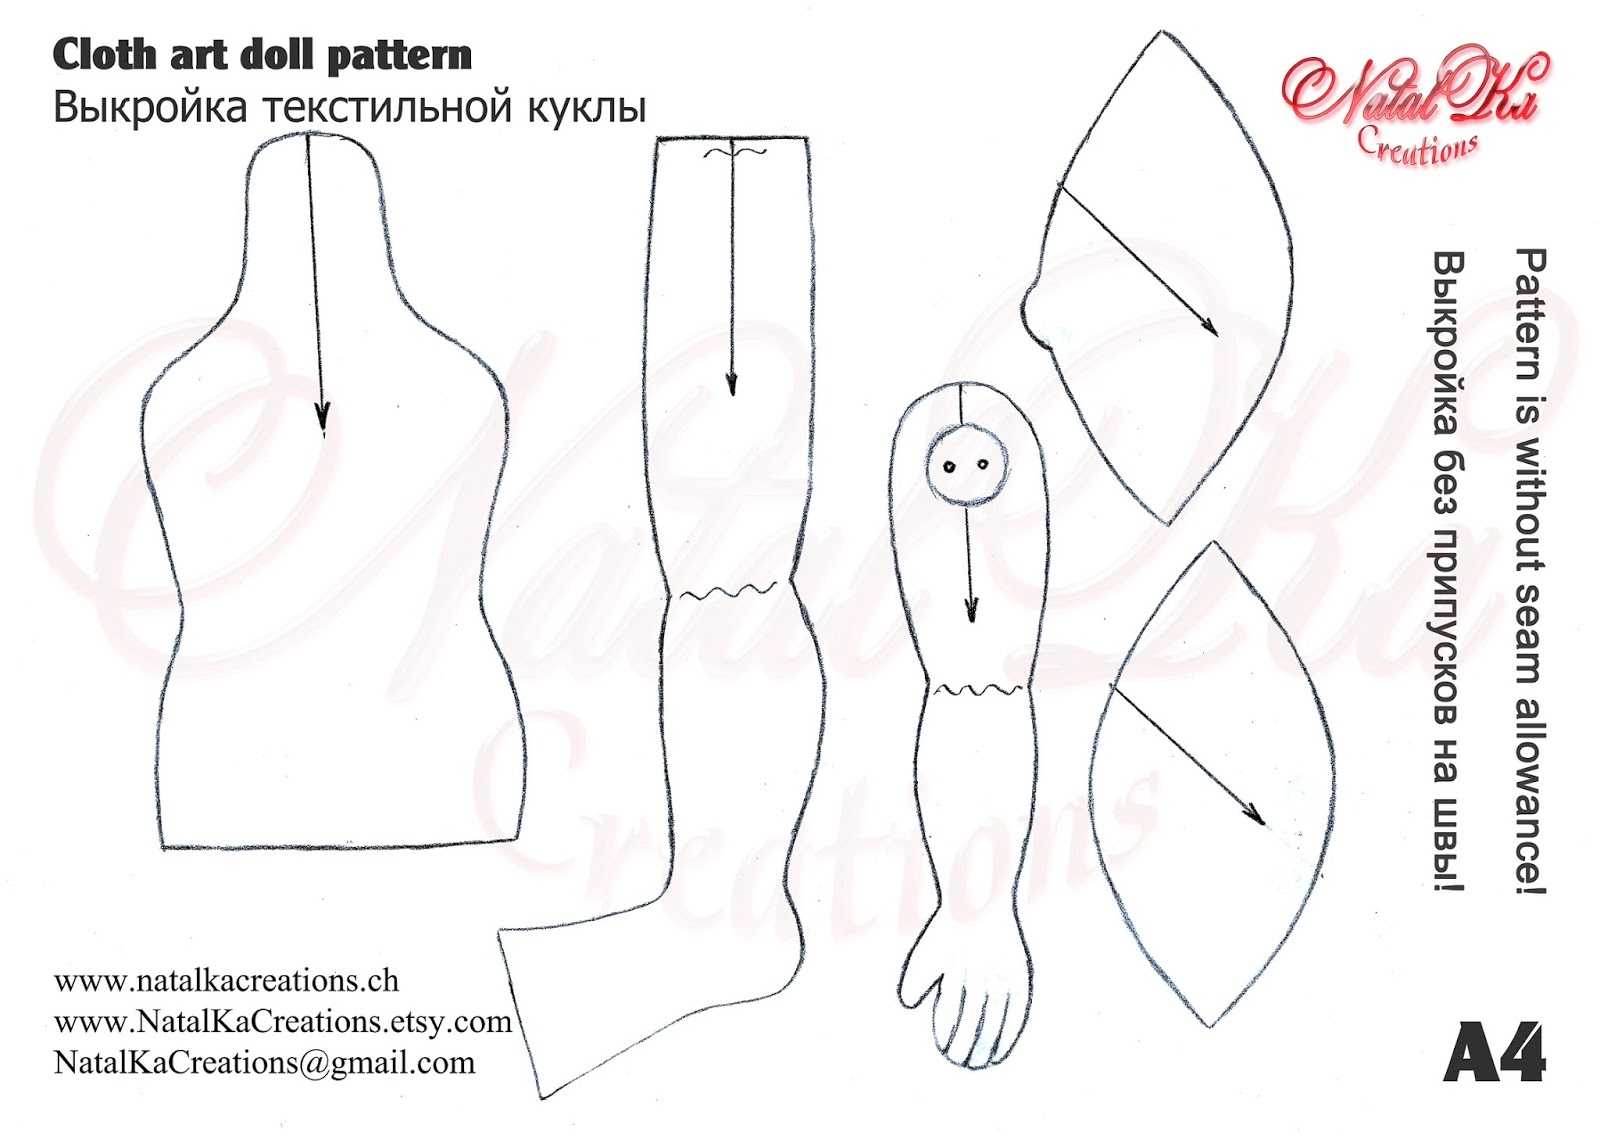 Куклы из капроновых колготок своими руками - пошаговая фото инструкция, мастер-класс для начинающих